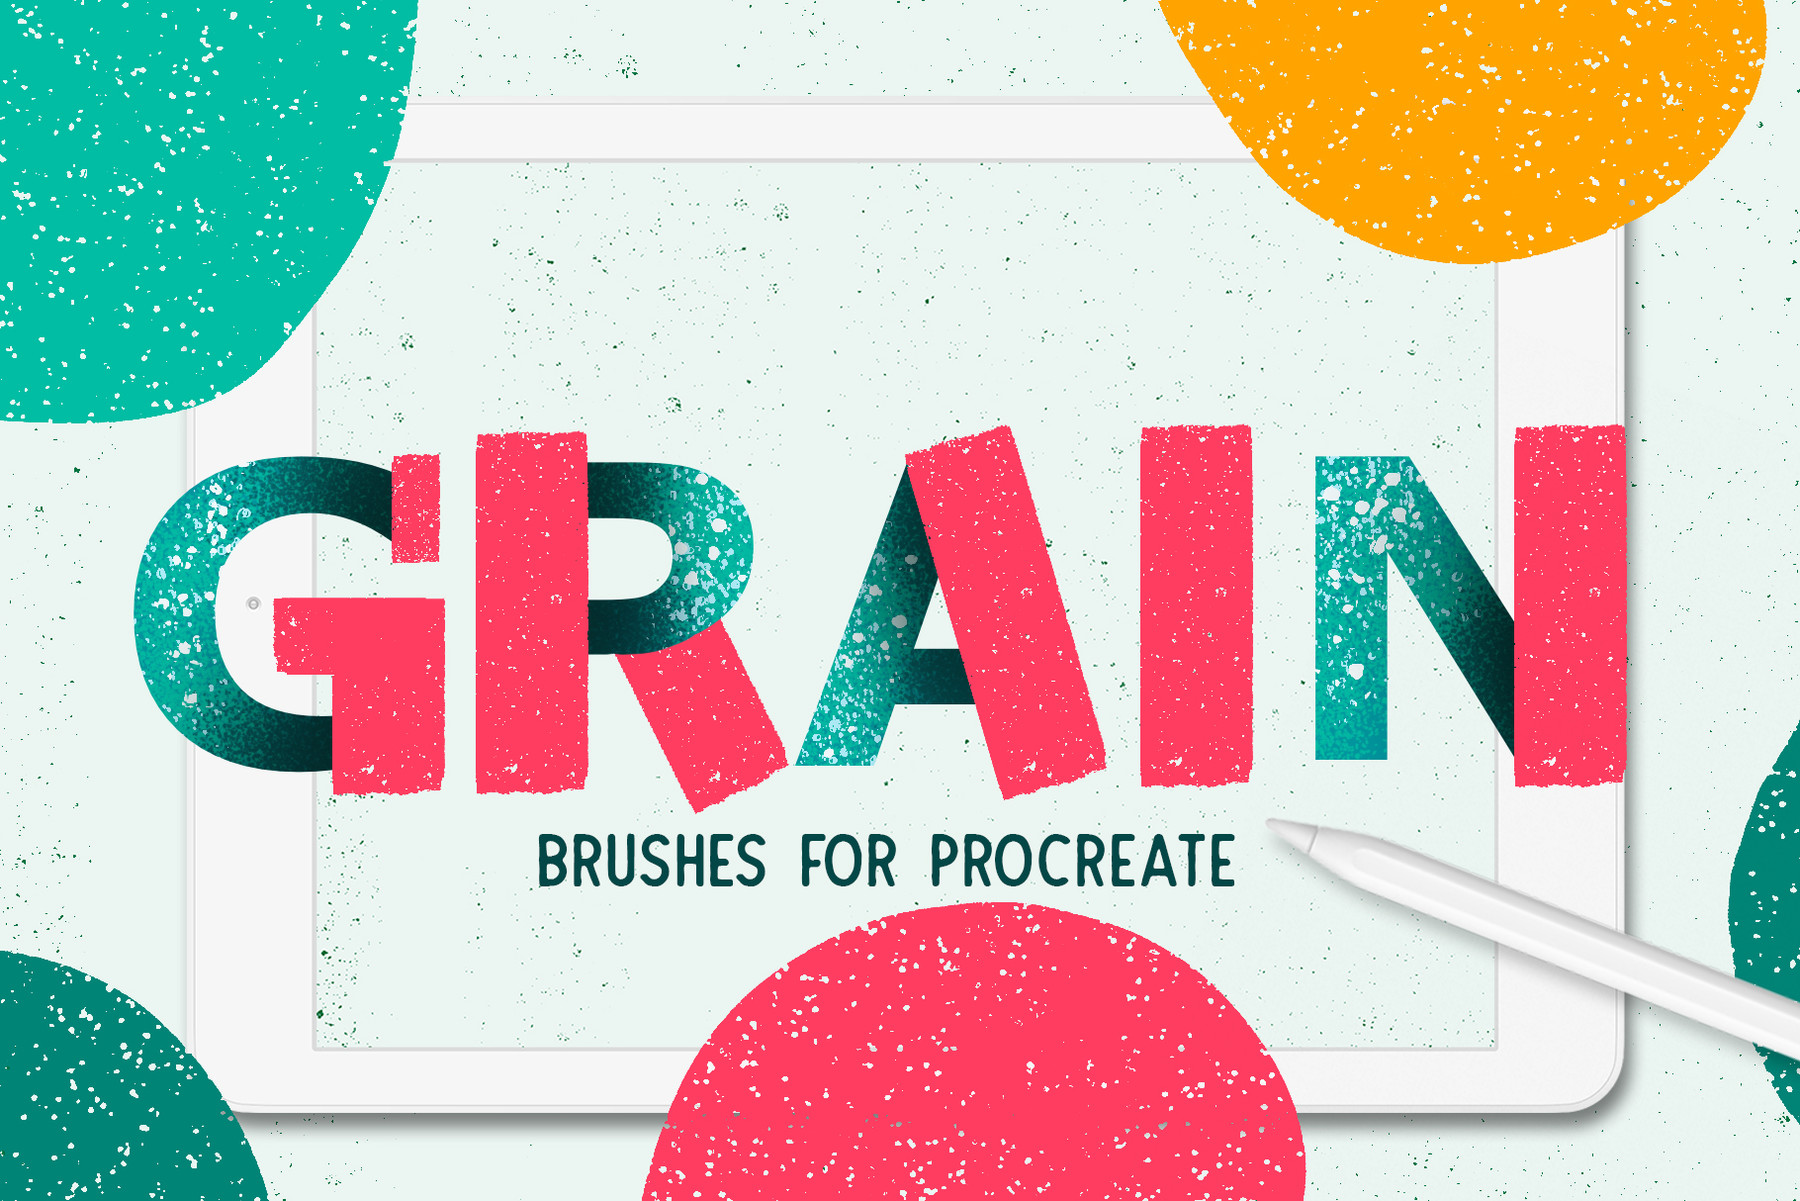 grainy procreate brushes free